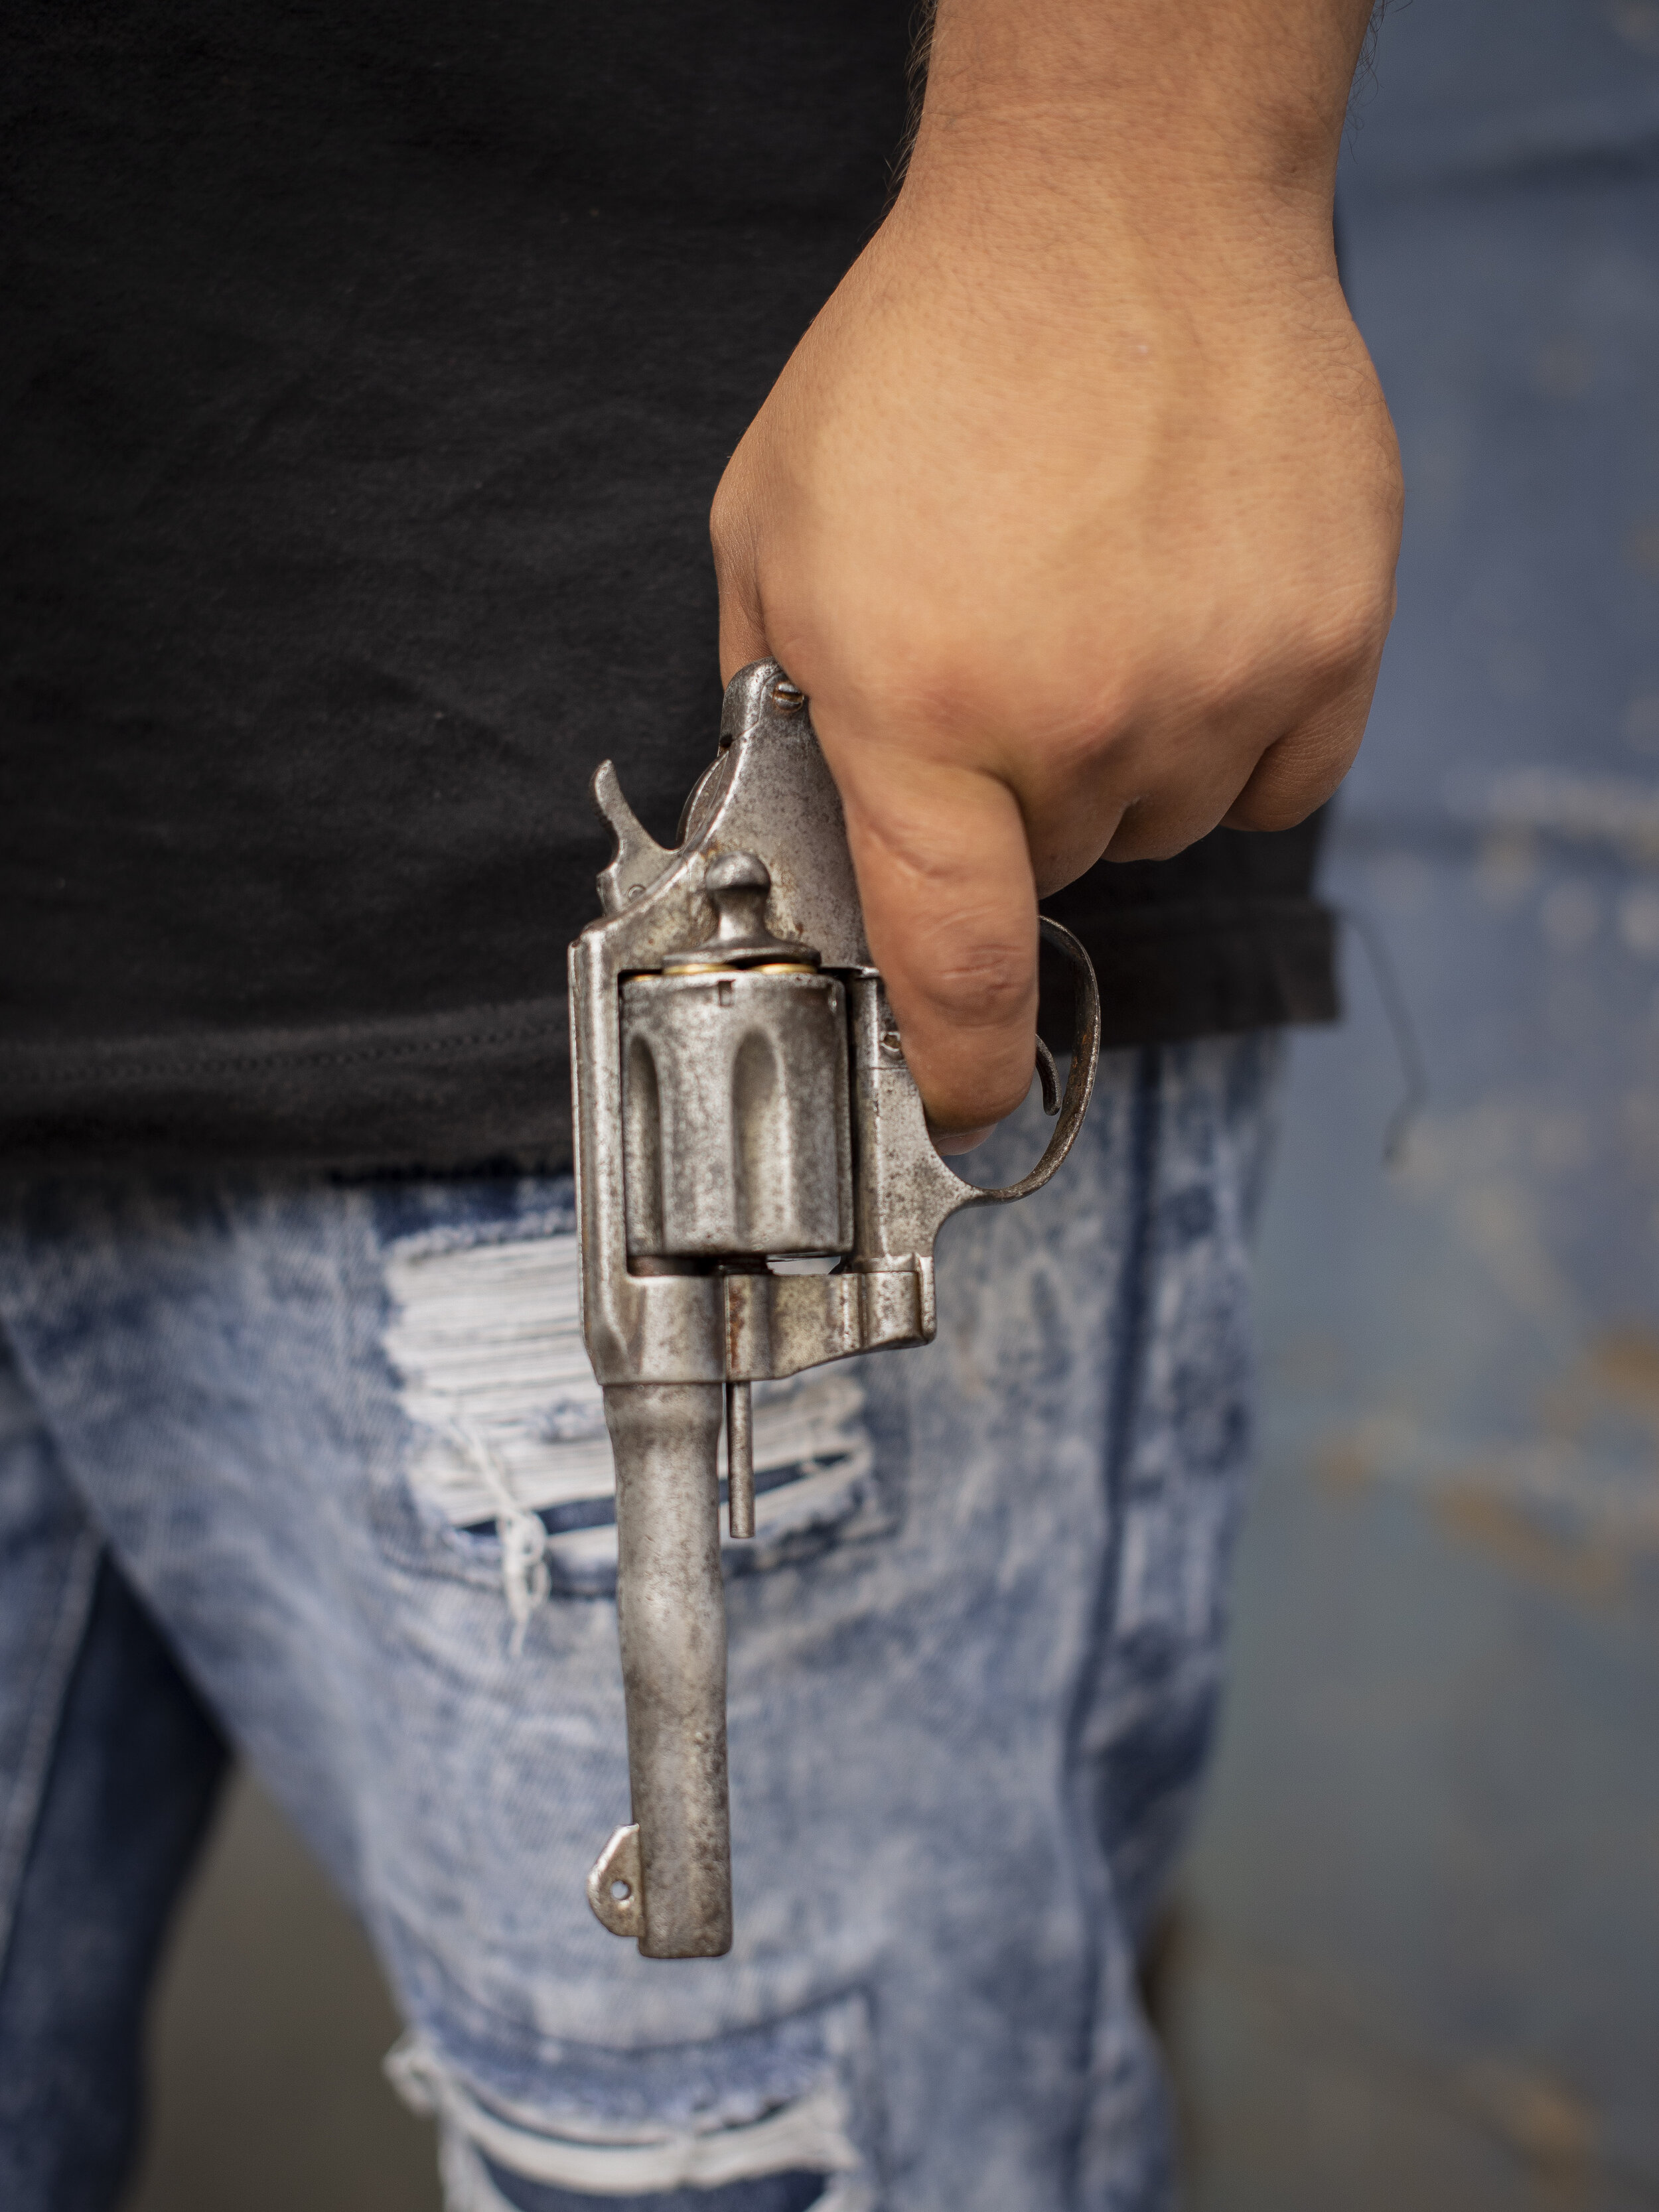   A Barrio 18 gang member holding a pistol in San Salvador. 